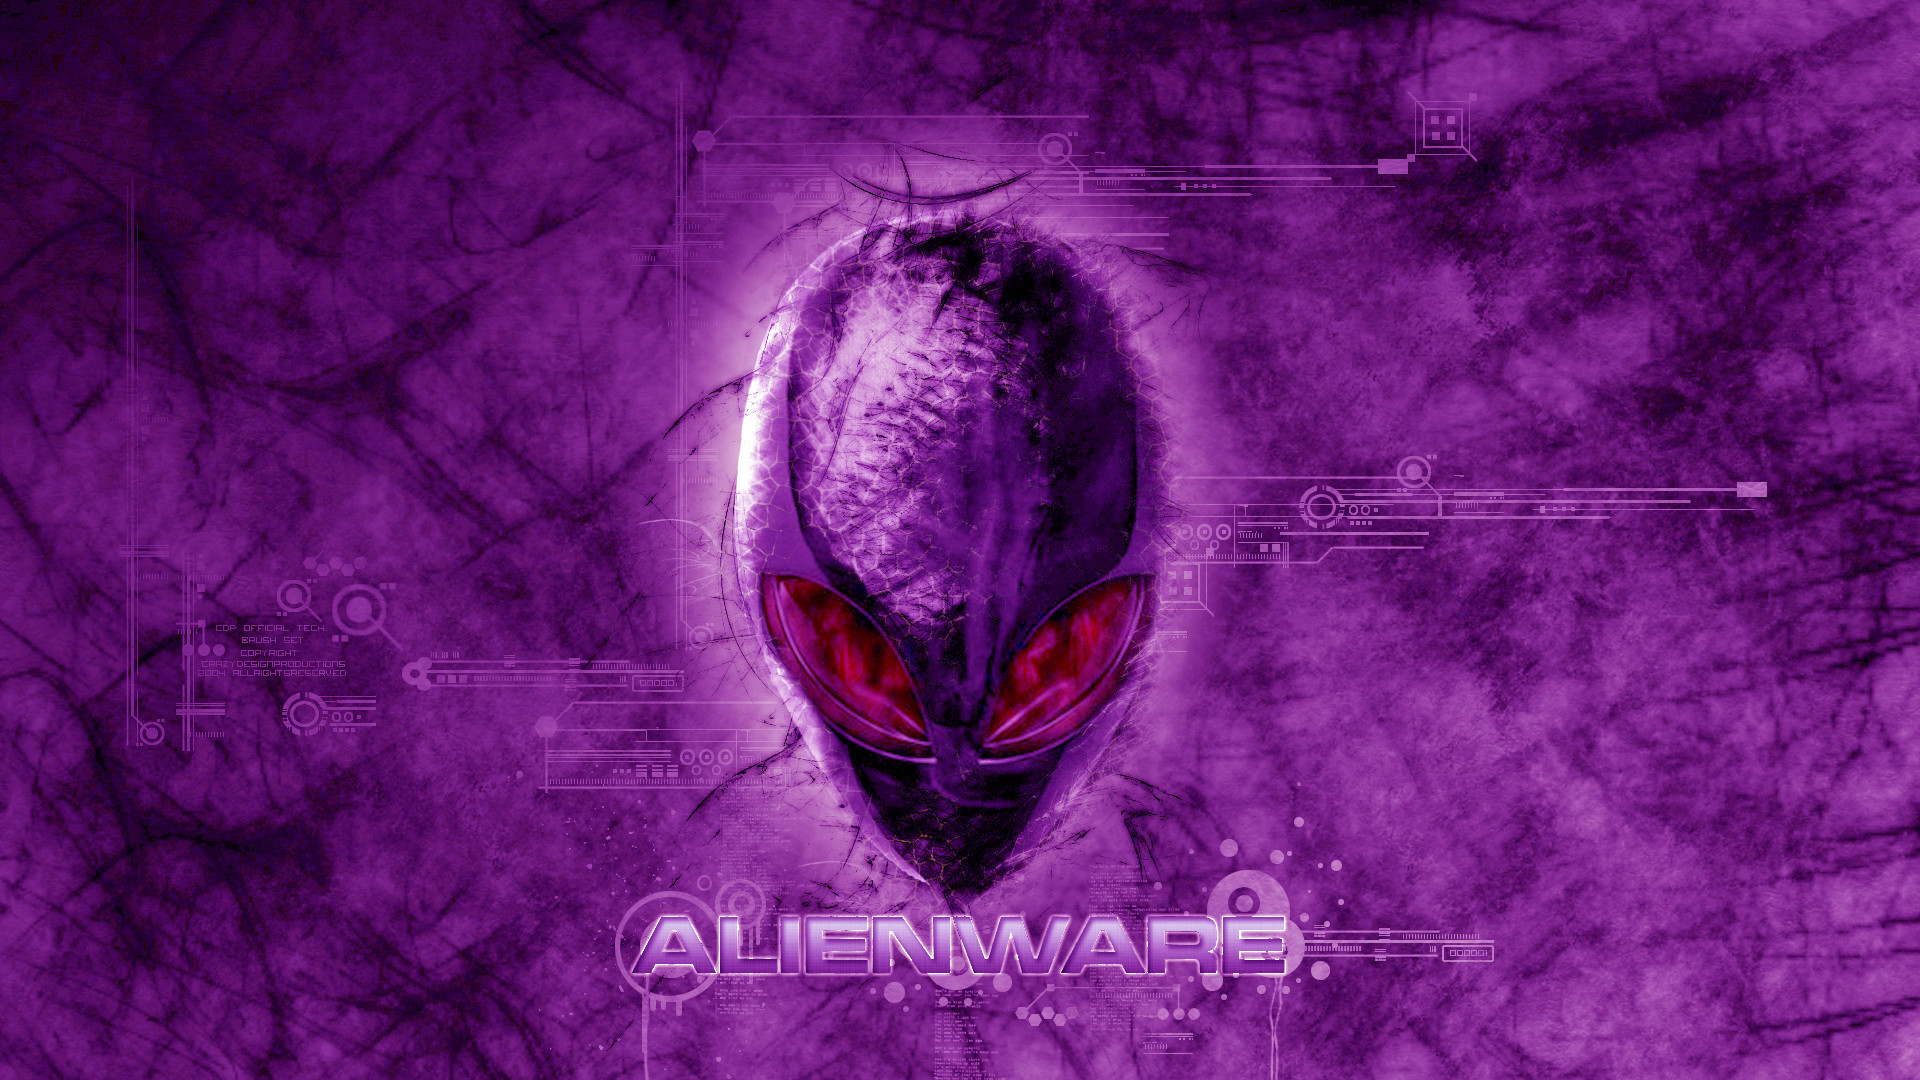 1920x1080 alienware dark violet red eyes logo